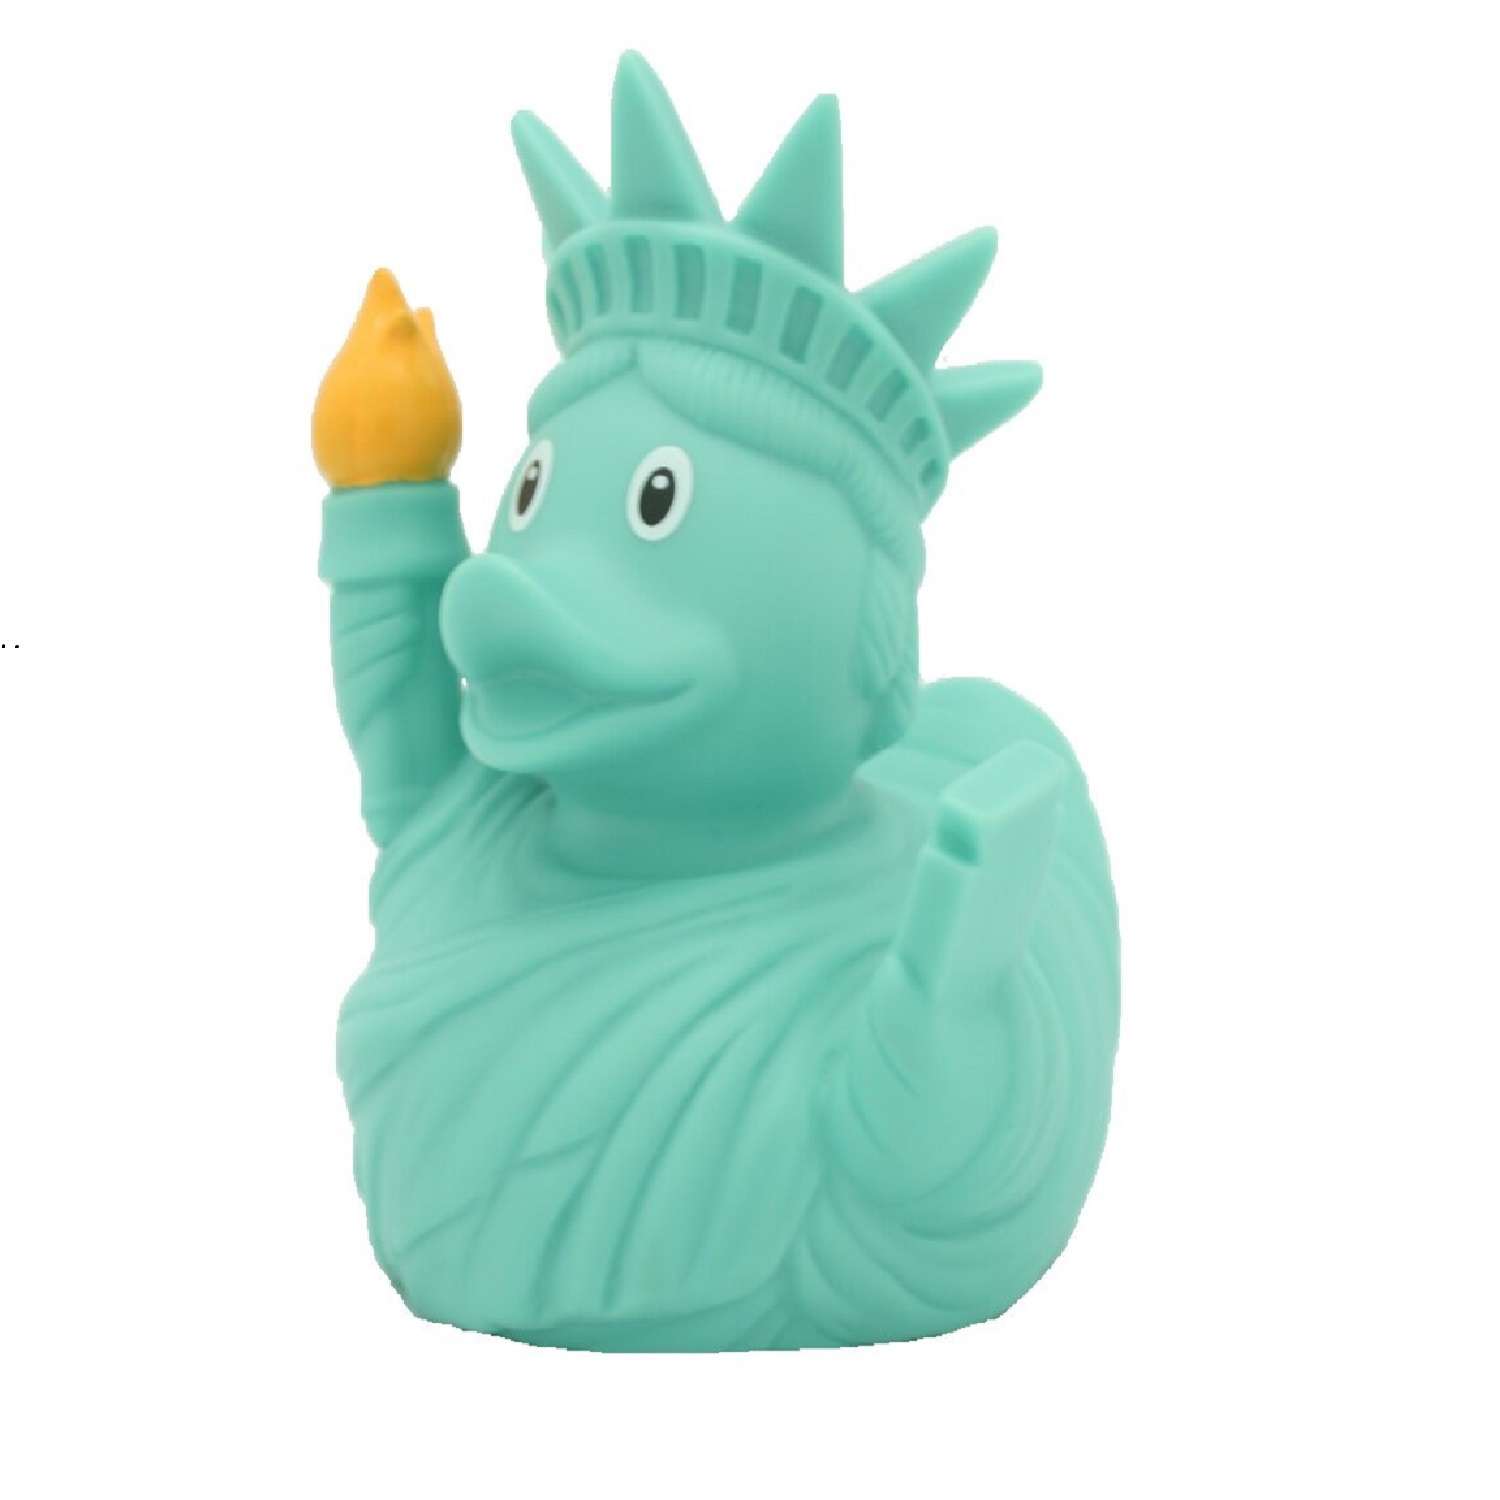 Игрушка Funny ducks для ванной Статуя Свободы уточка 1991 - фото 1